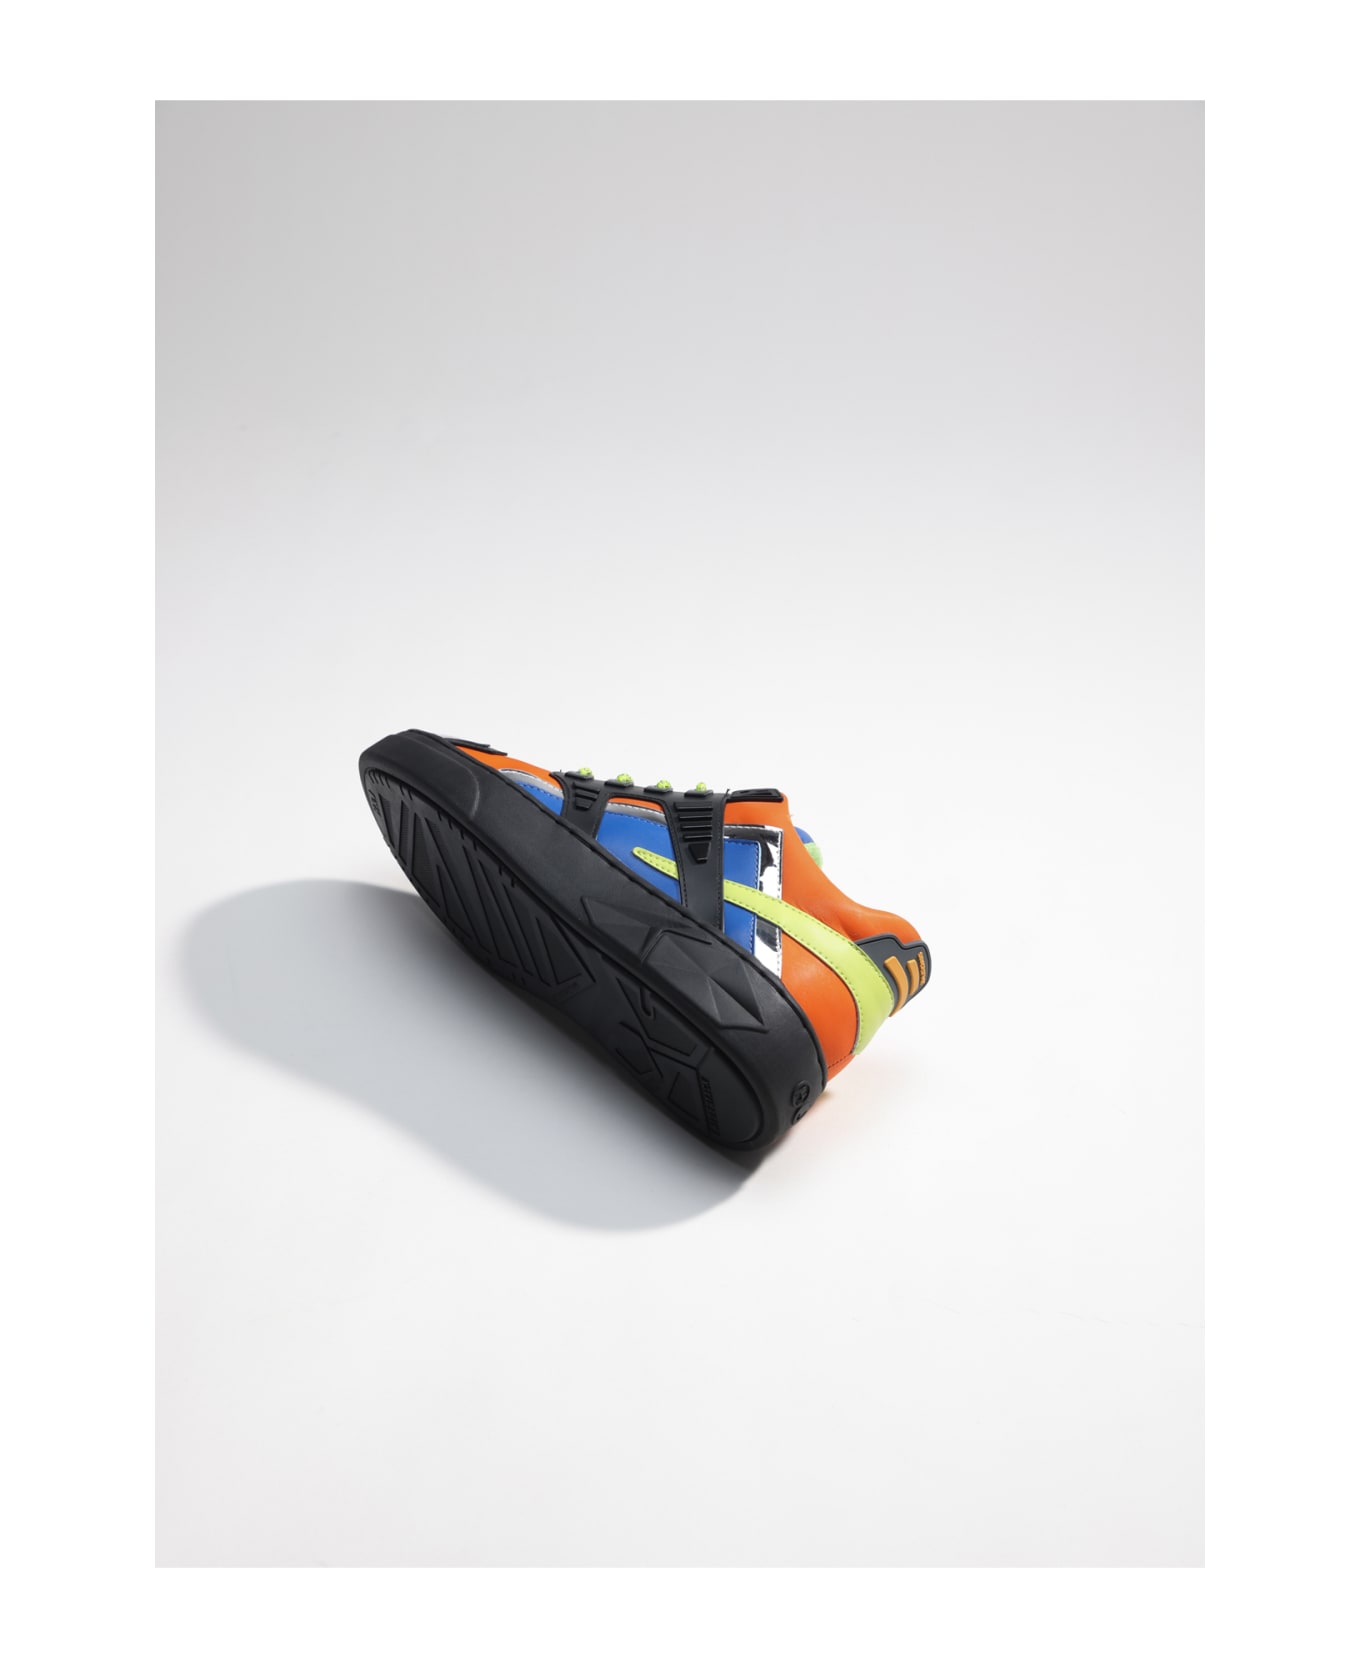 Hide&Jack Low Top Sneaker - Mini Silverstone Orange Black